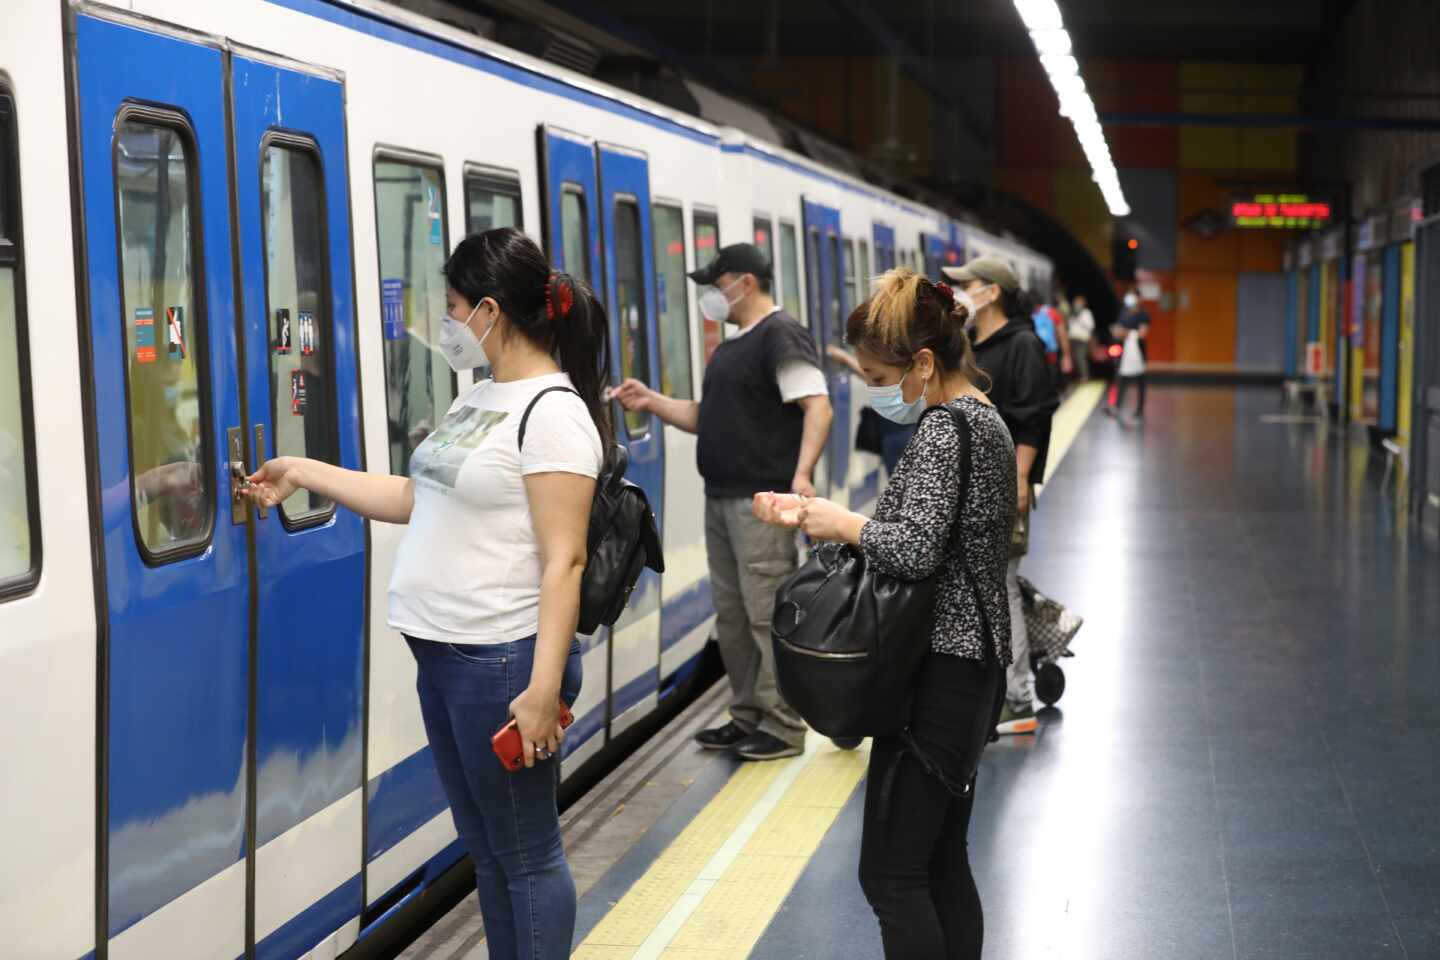 Empleados de Metro de Madrid ante la fase 2: "No estamos listos para aumentar viajeros"